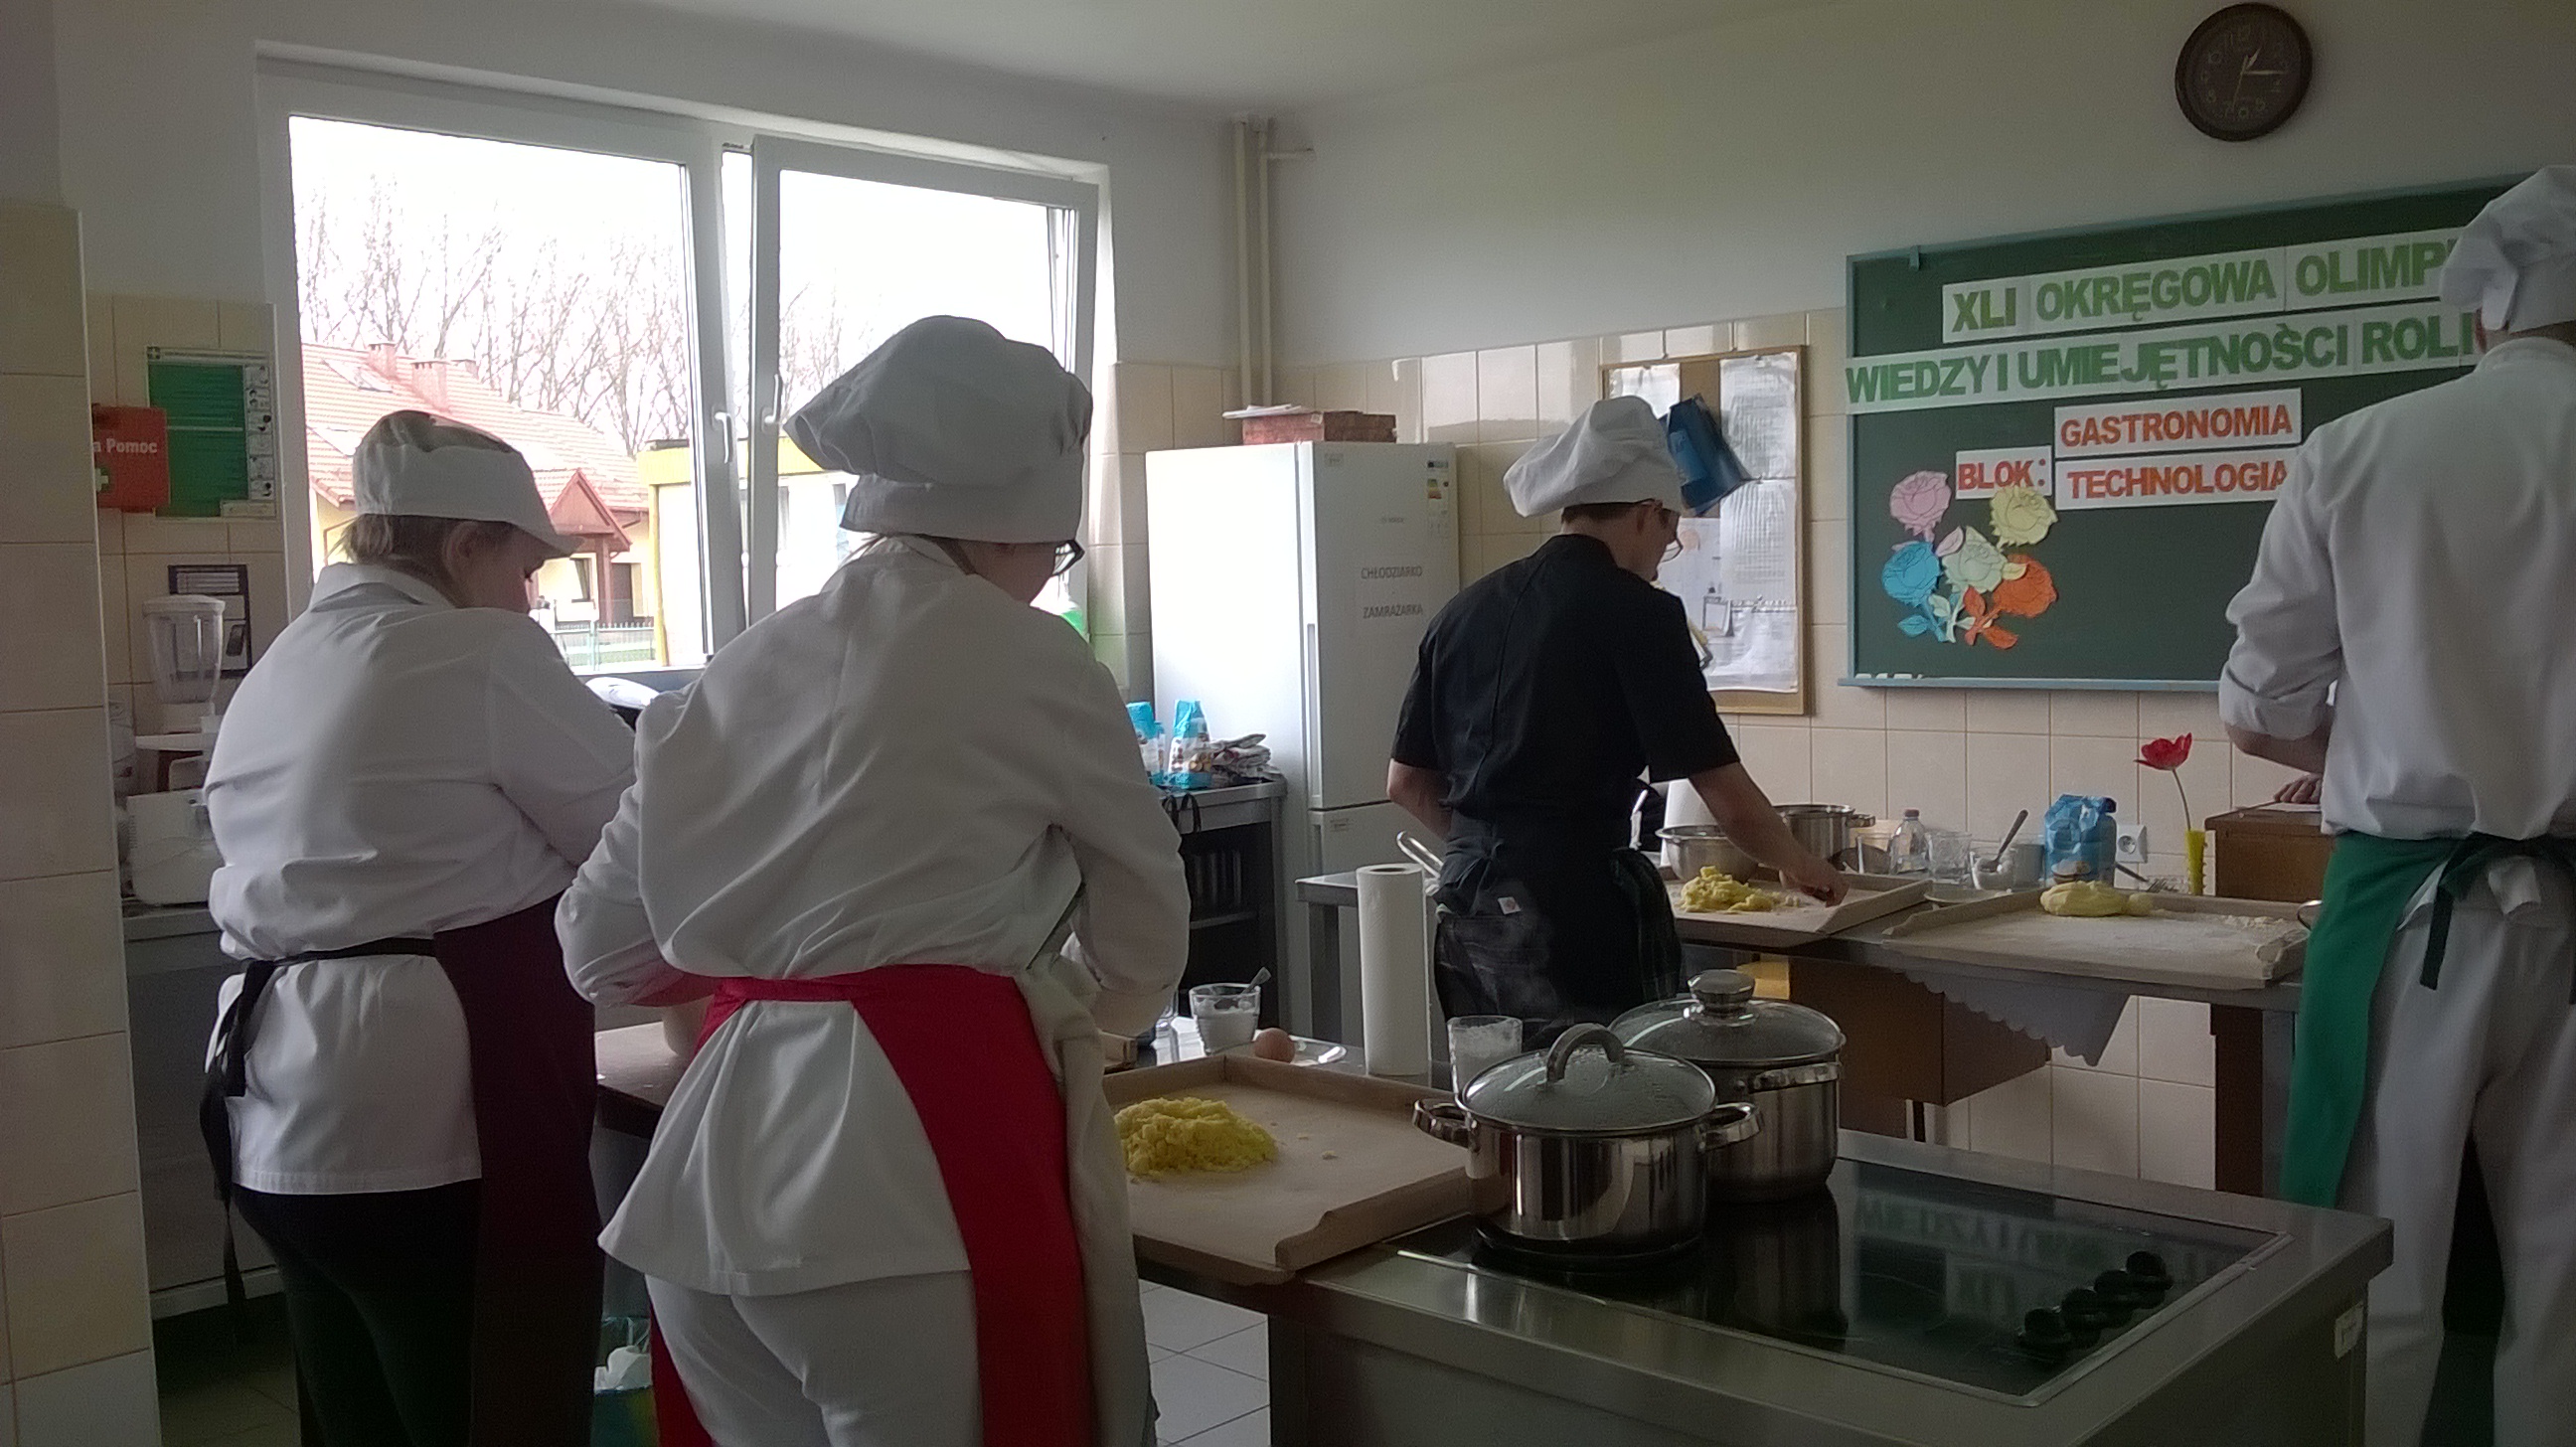 Uczestniczy Olimpiady podczas wykonywania zadania praktycznego  (wykonanie klusek śląskich) w bloku „Gastronomia”.